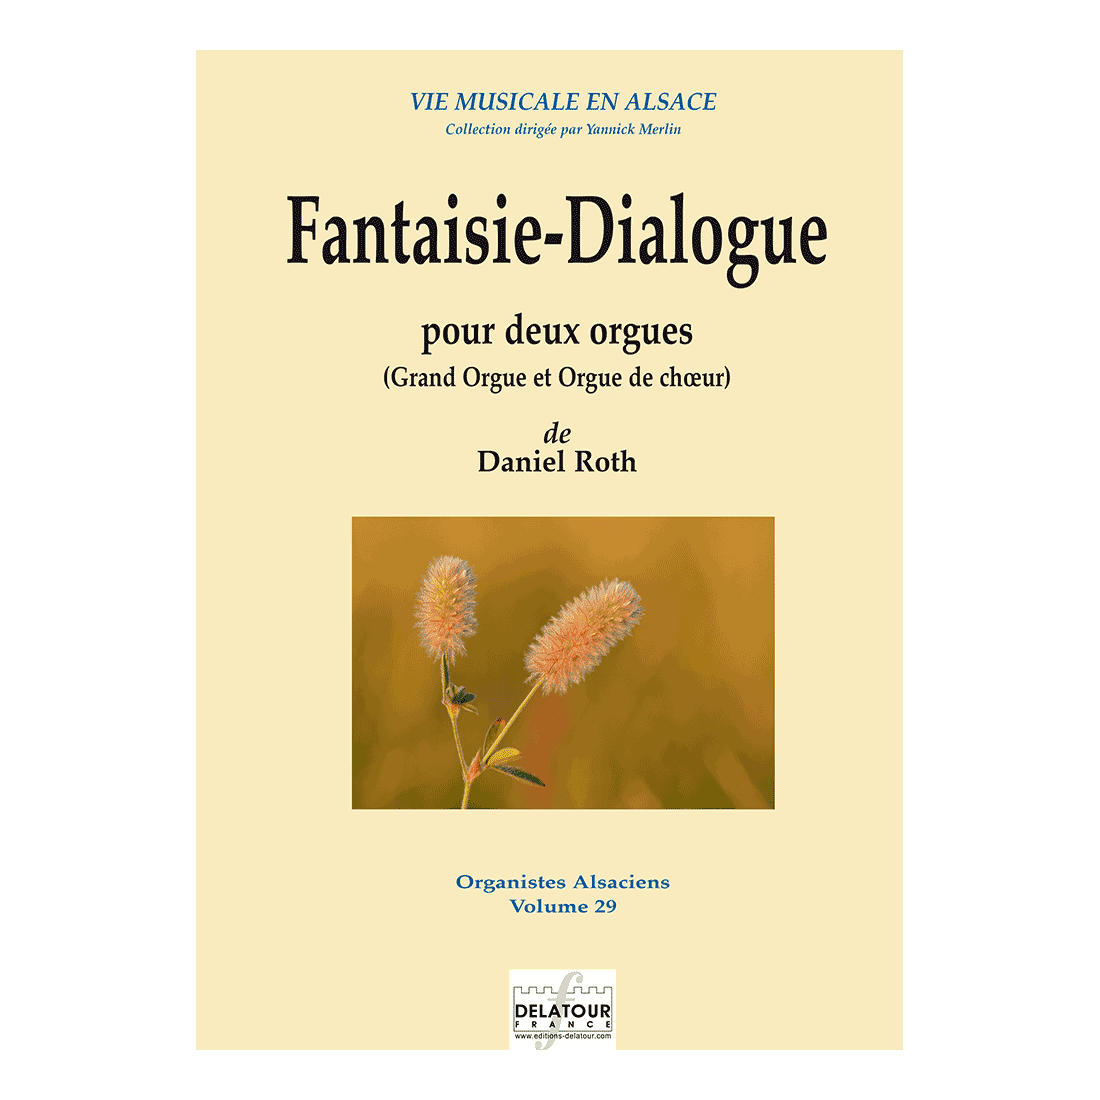 Fantaisie-Dialogue pour deux orgues